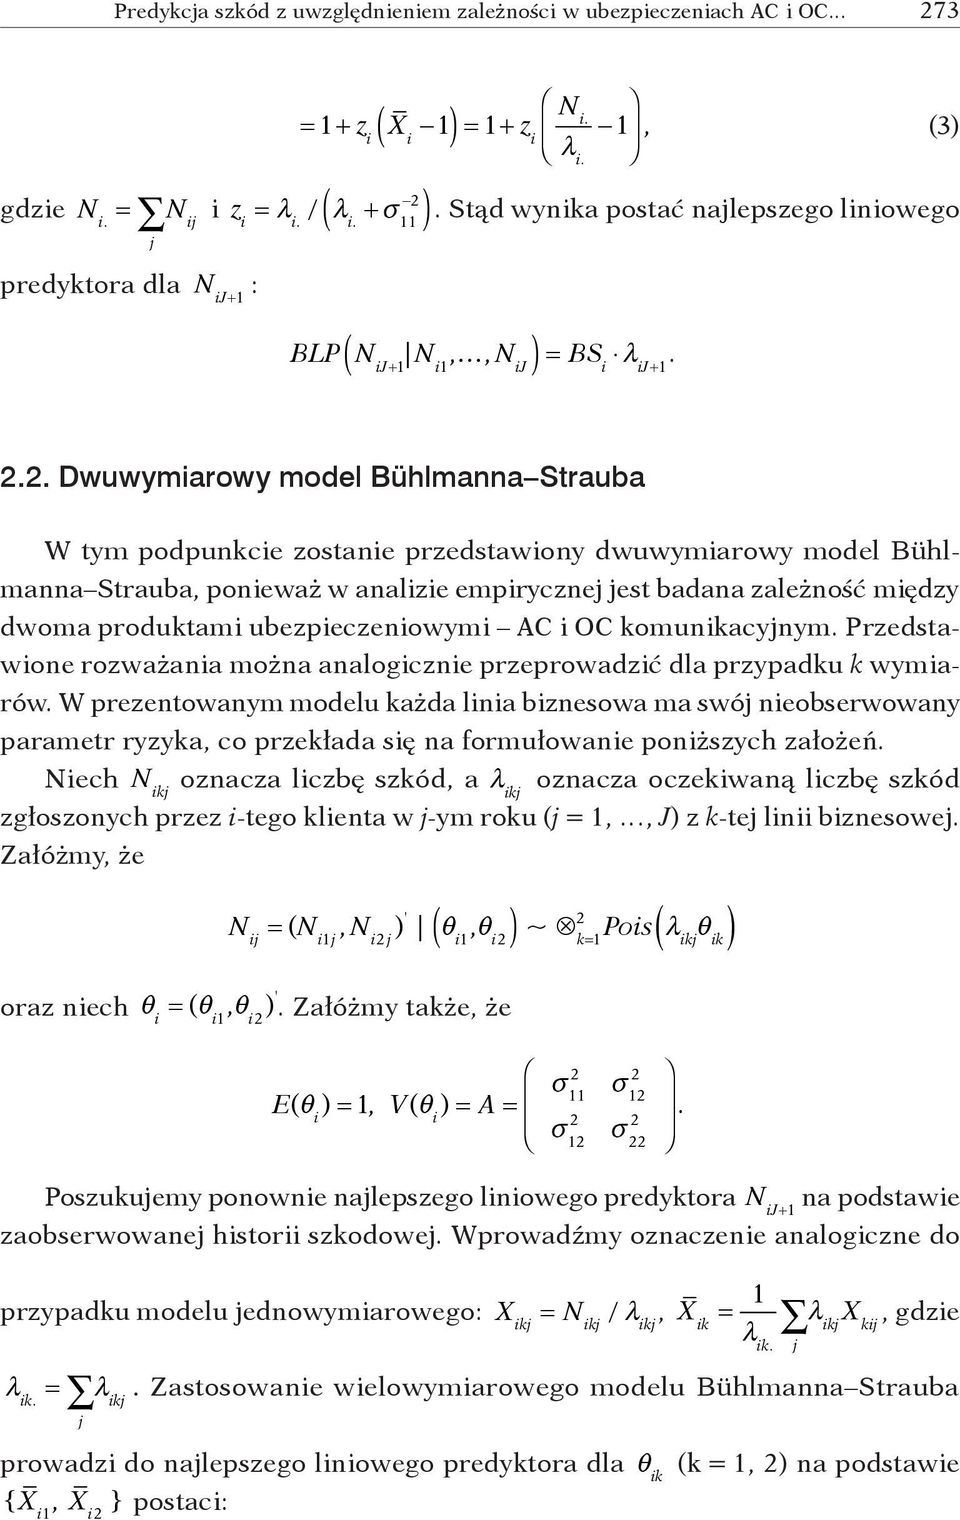 .. Dwuwymiarowy model Bühlmanna Strauba W tym podpunkcie zostanie przedstawiony dwuwymiarowy model Bühlmanna Strauba, ponieważ w analizie empirycznej jest badana zależność między dwoma produktami